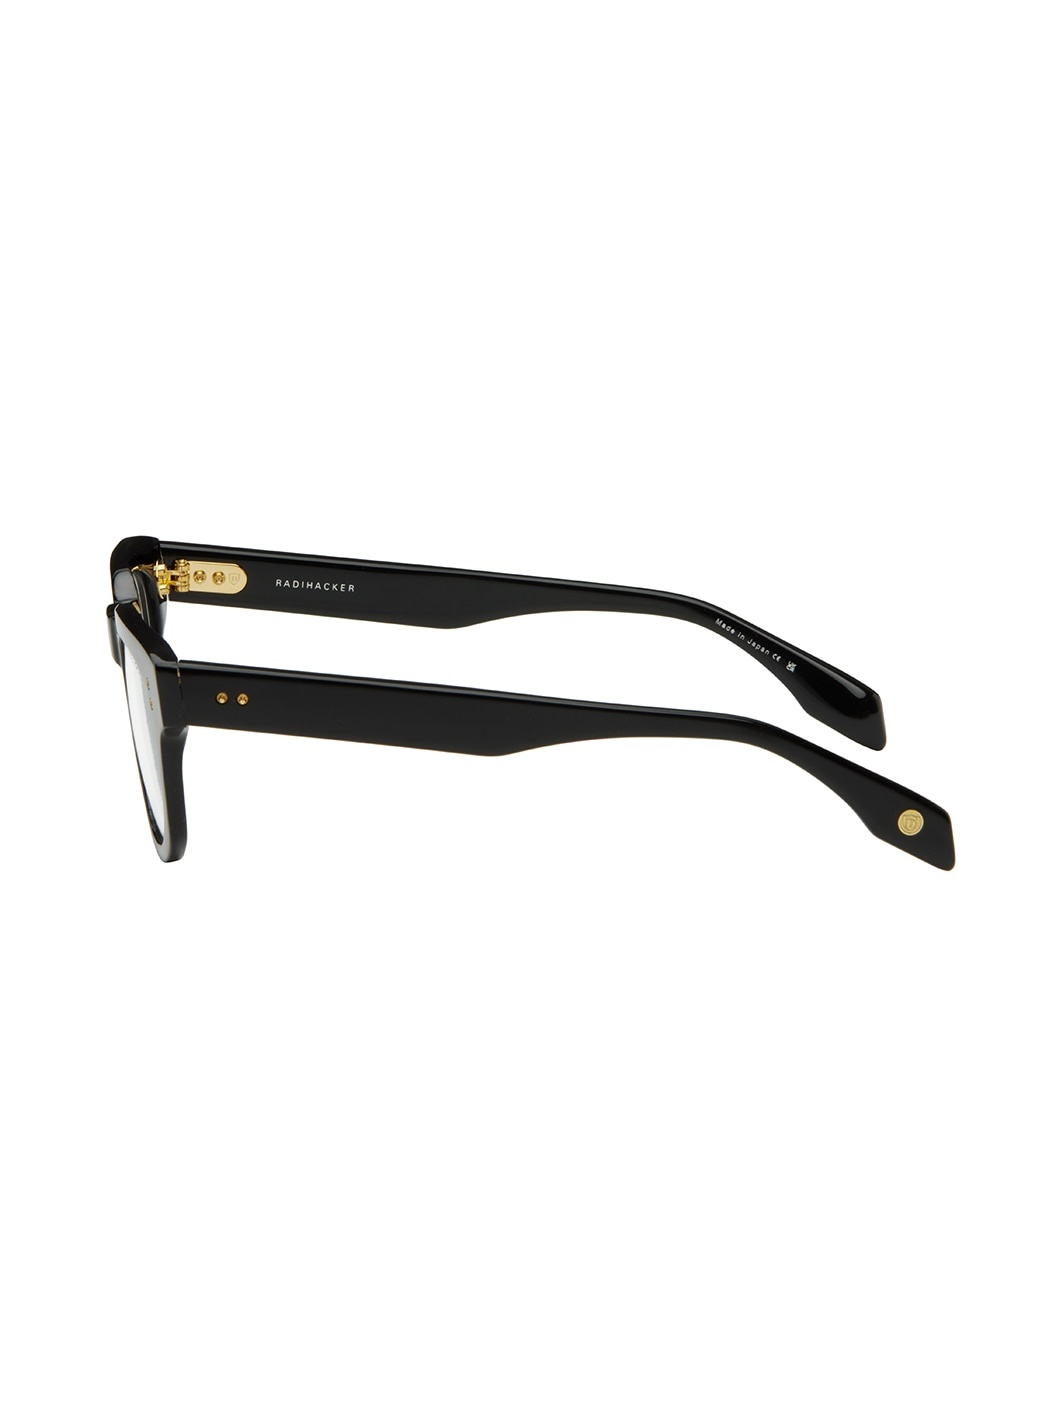 Black Radihacker Glasses - 3